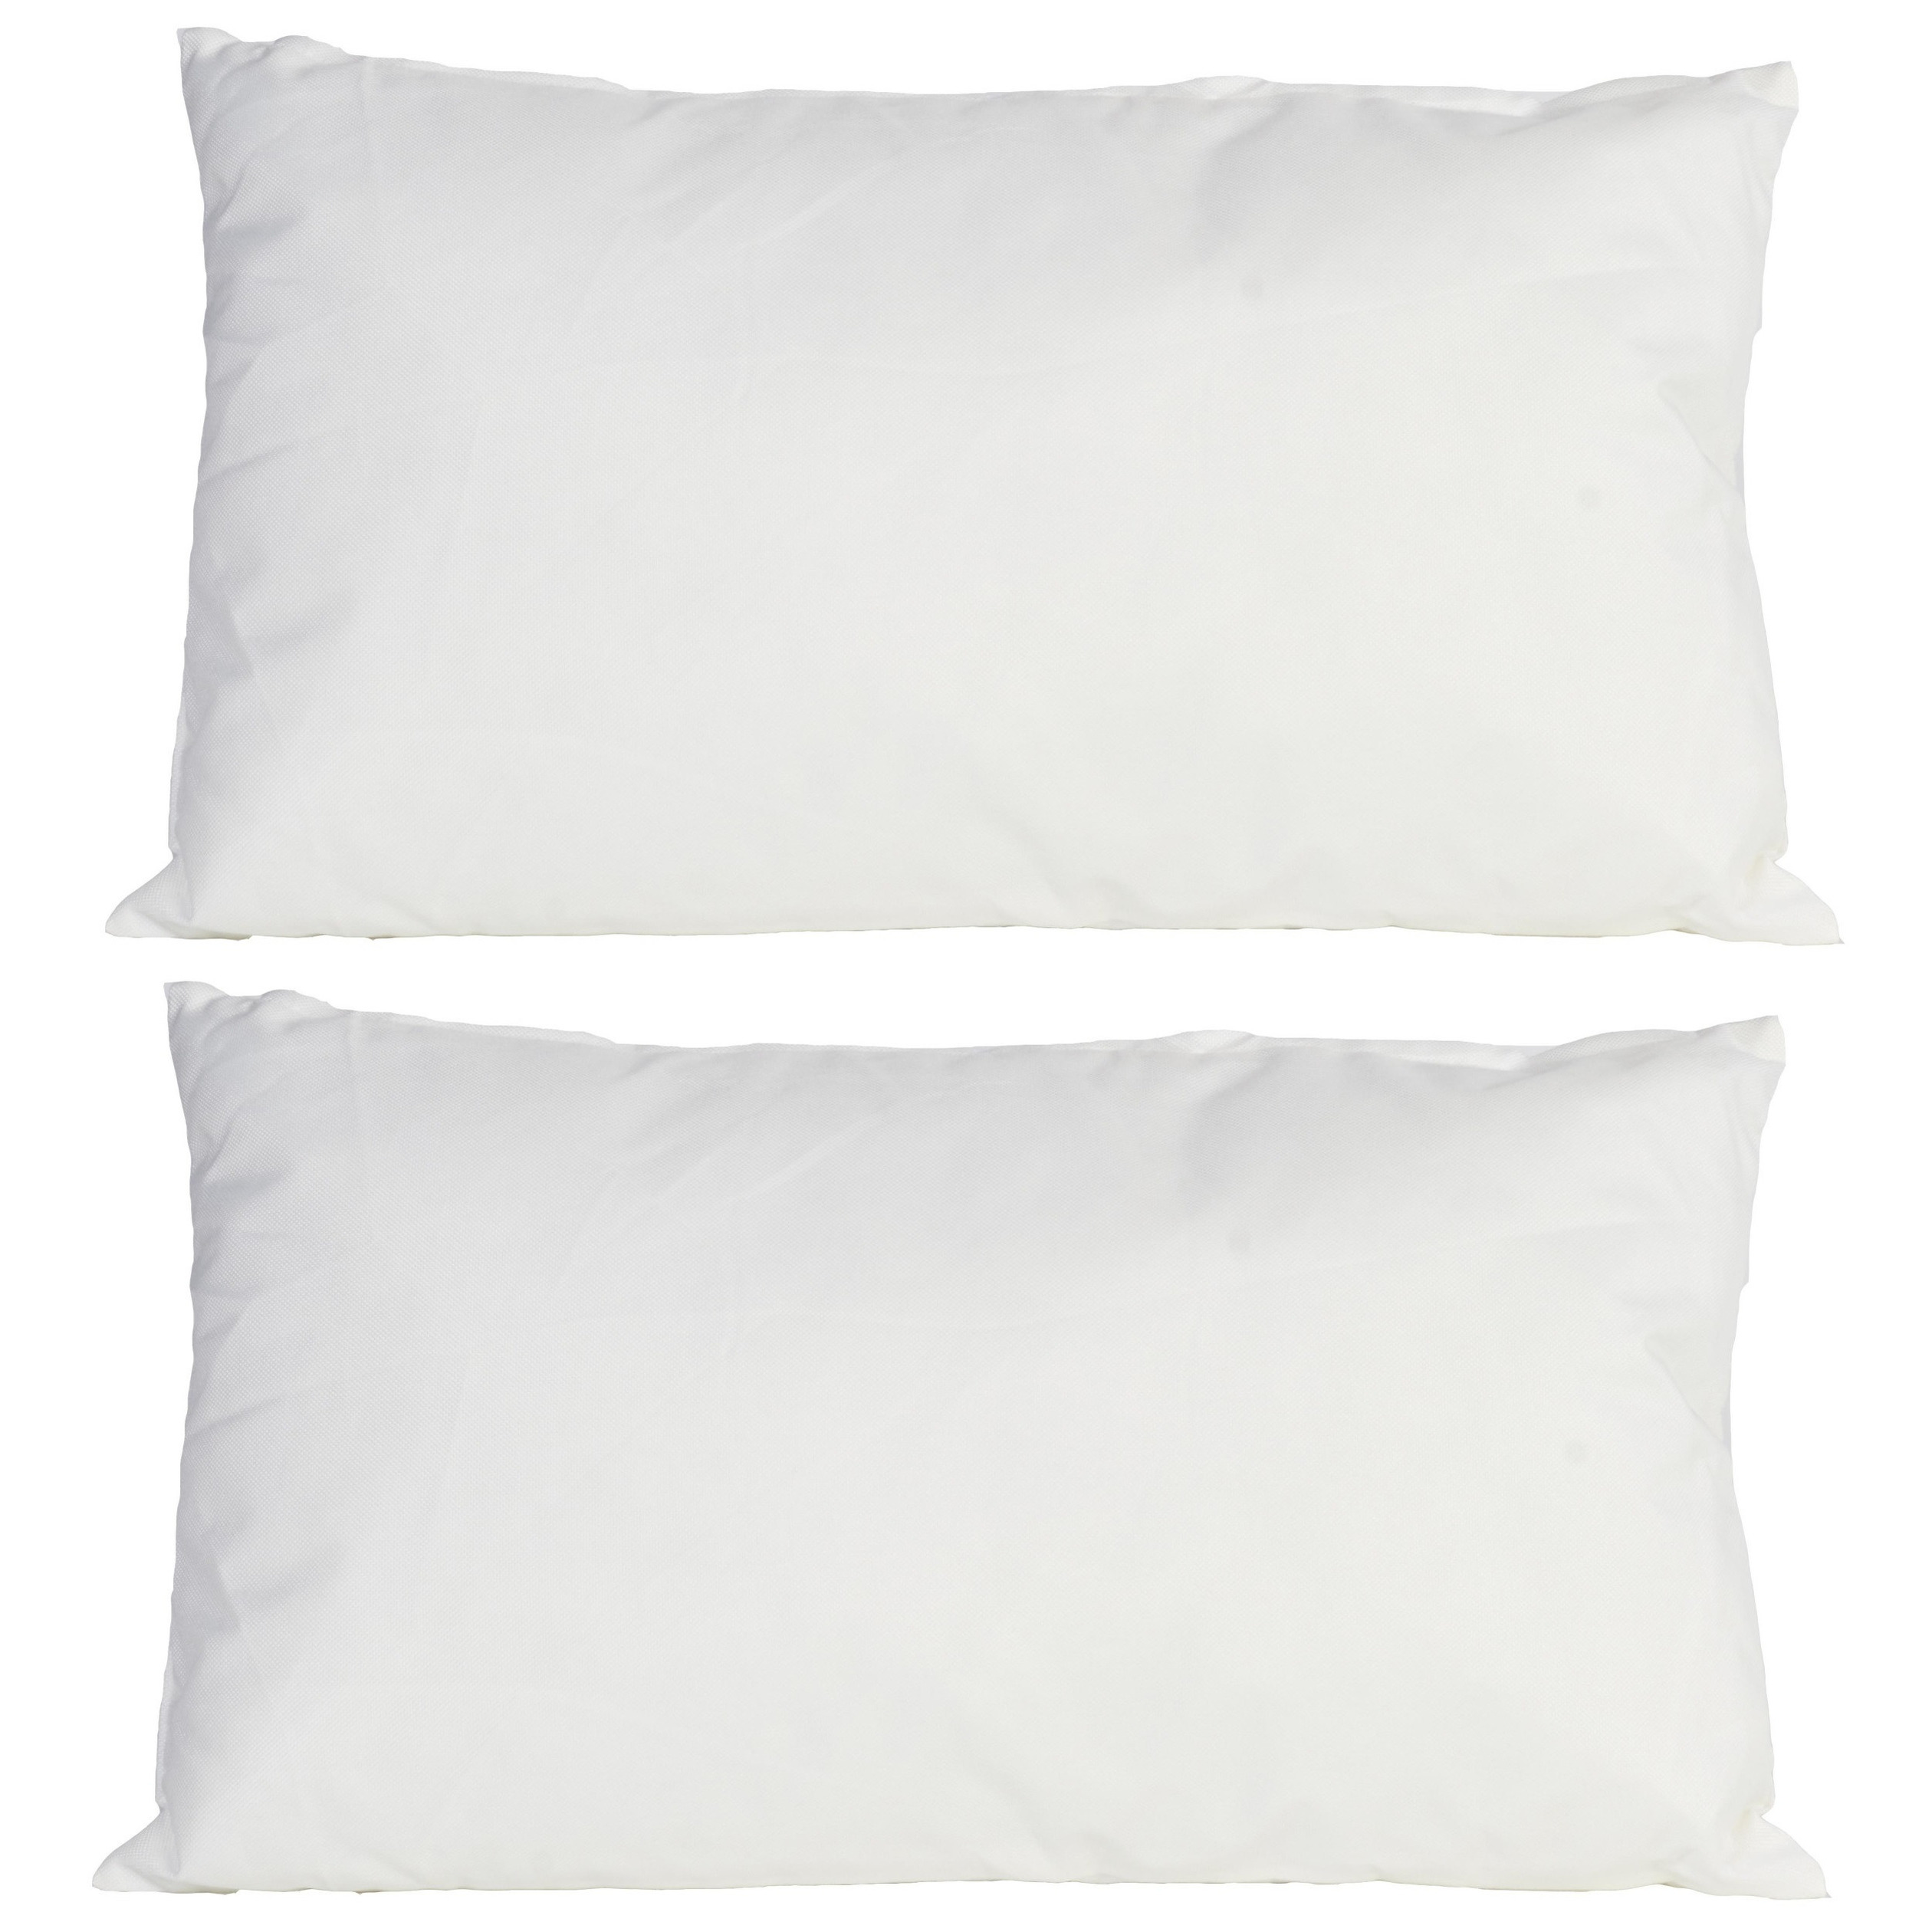 2x Bank-sier kussens voor binnen en buiten in de kleur wit 30 x 50 cm